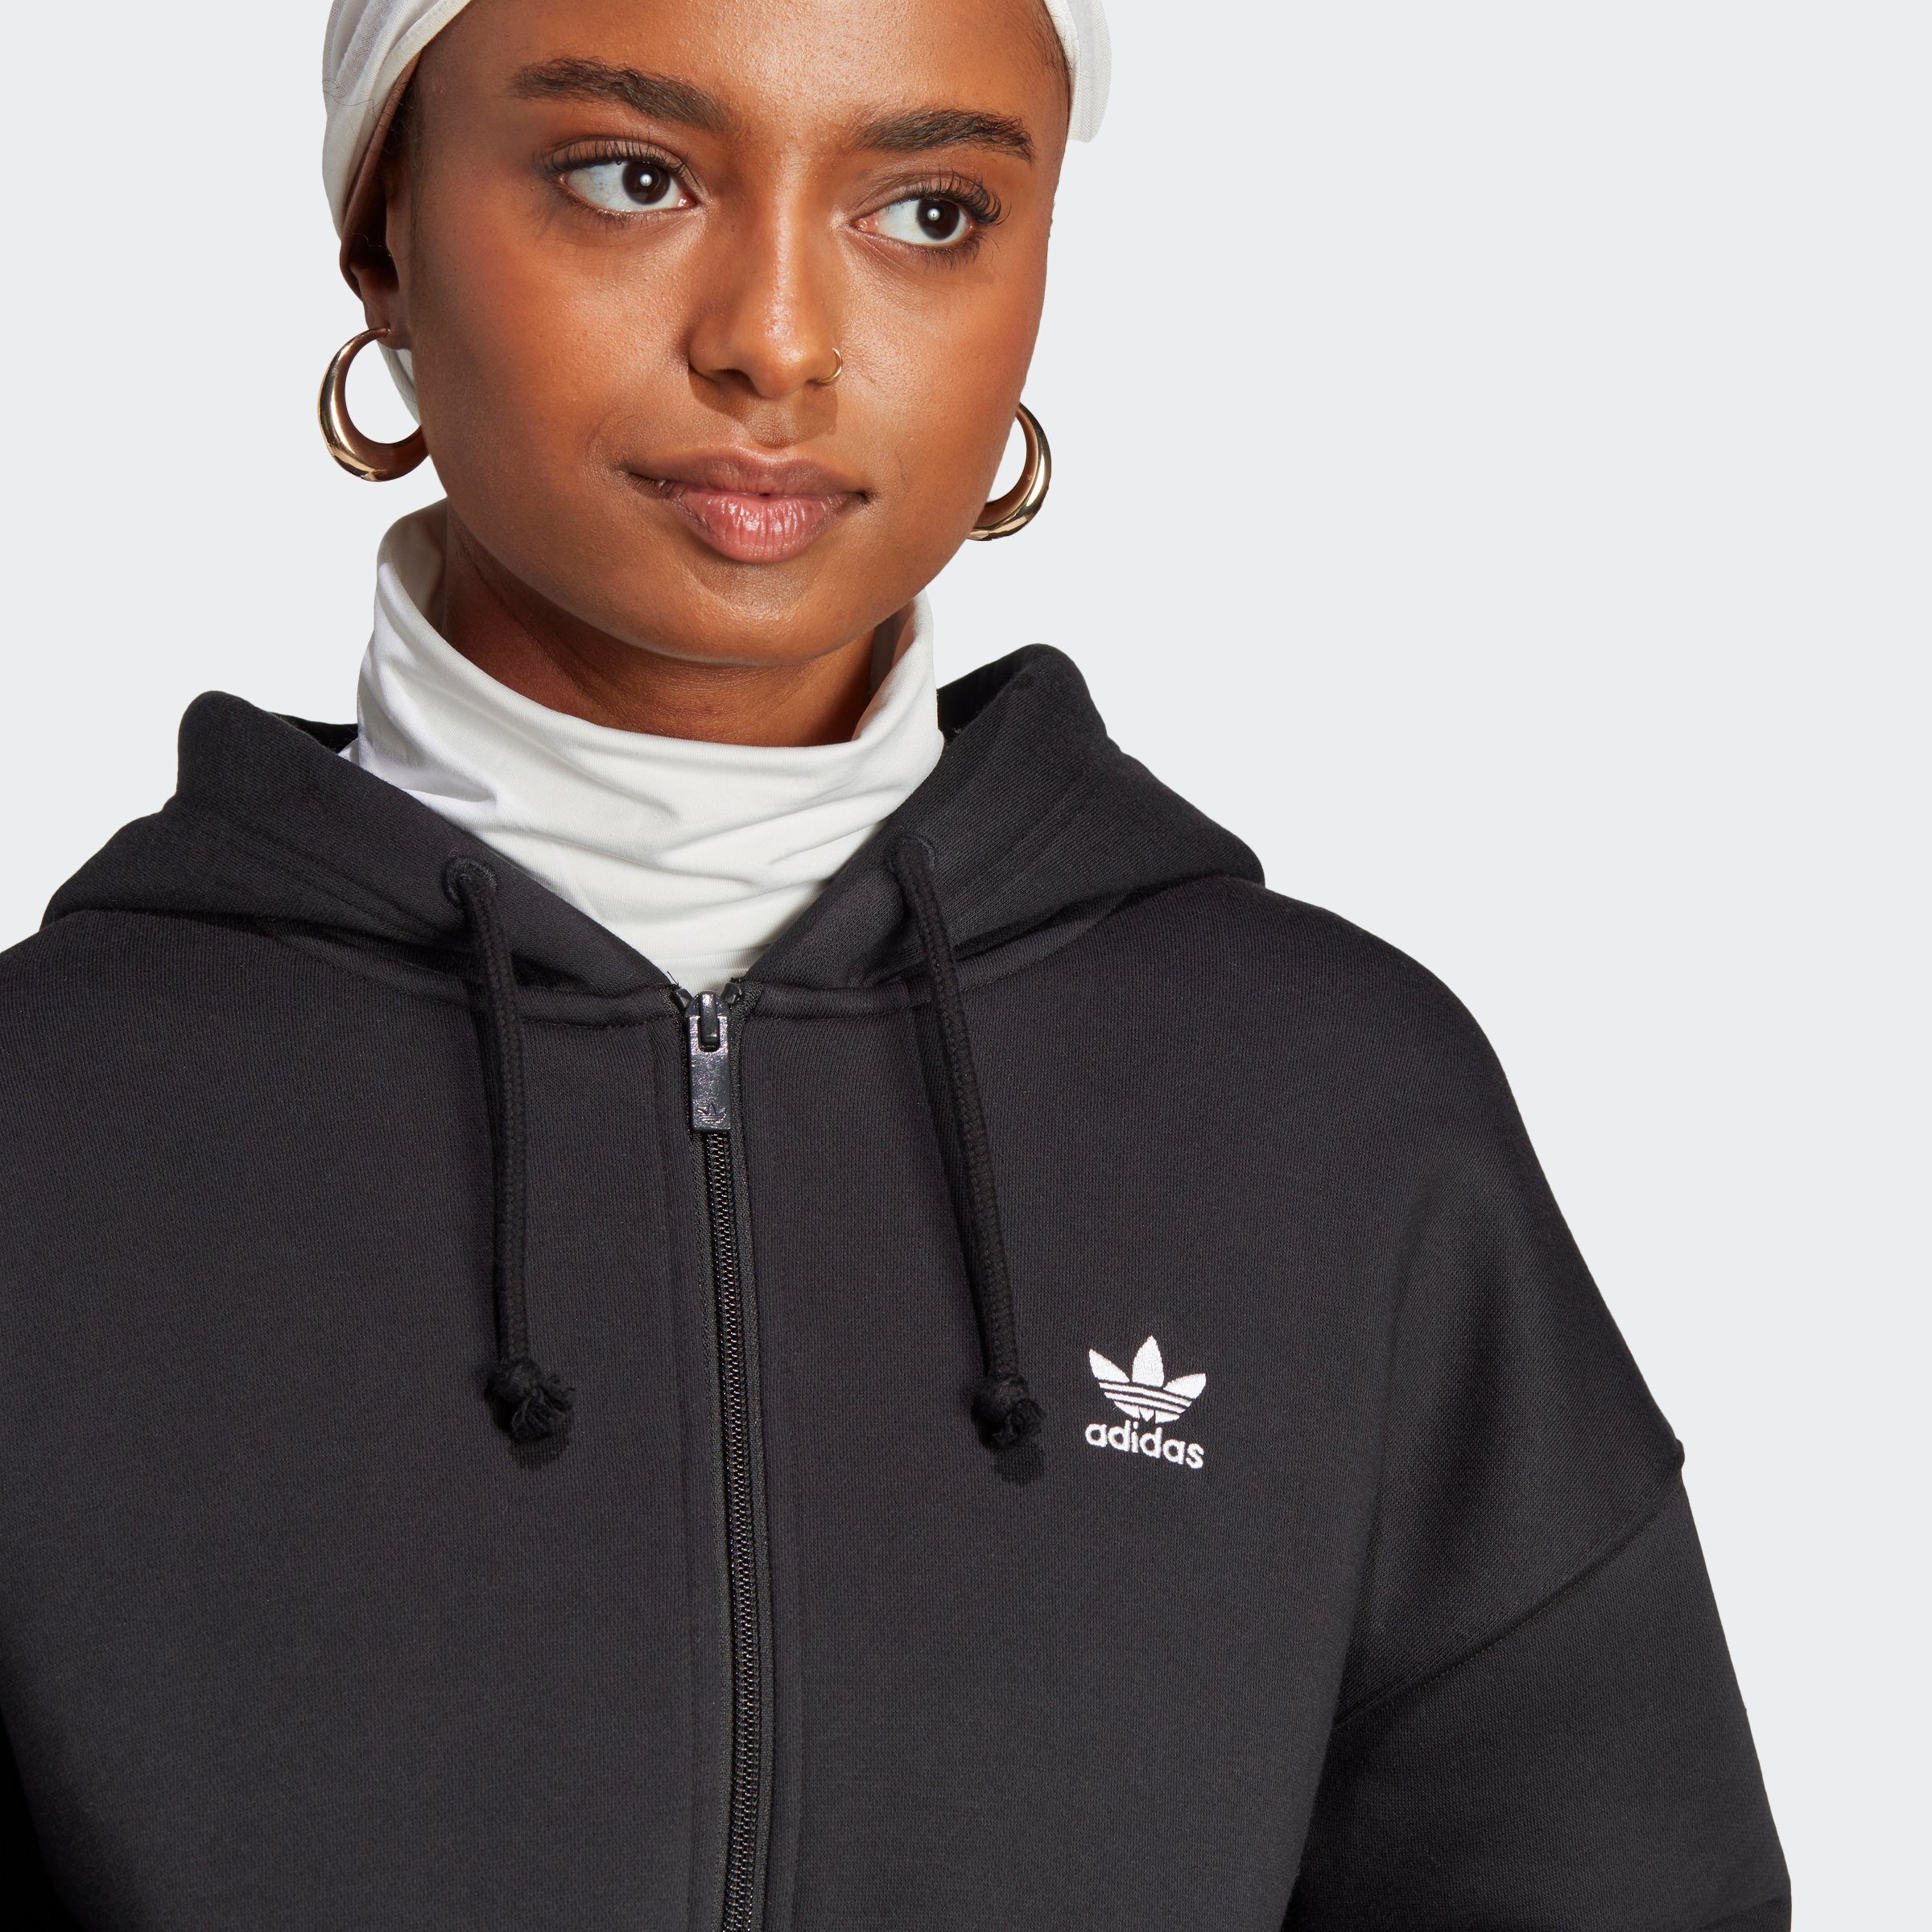 FULL adidas ZIP FLEECE Originals BLACK Sweatshirt